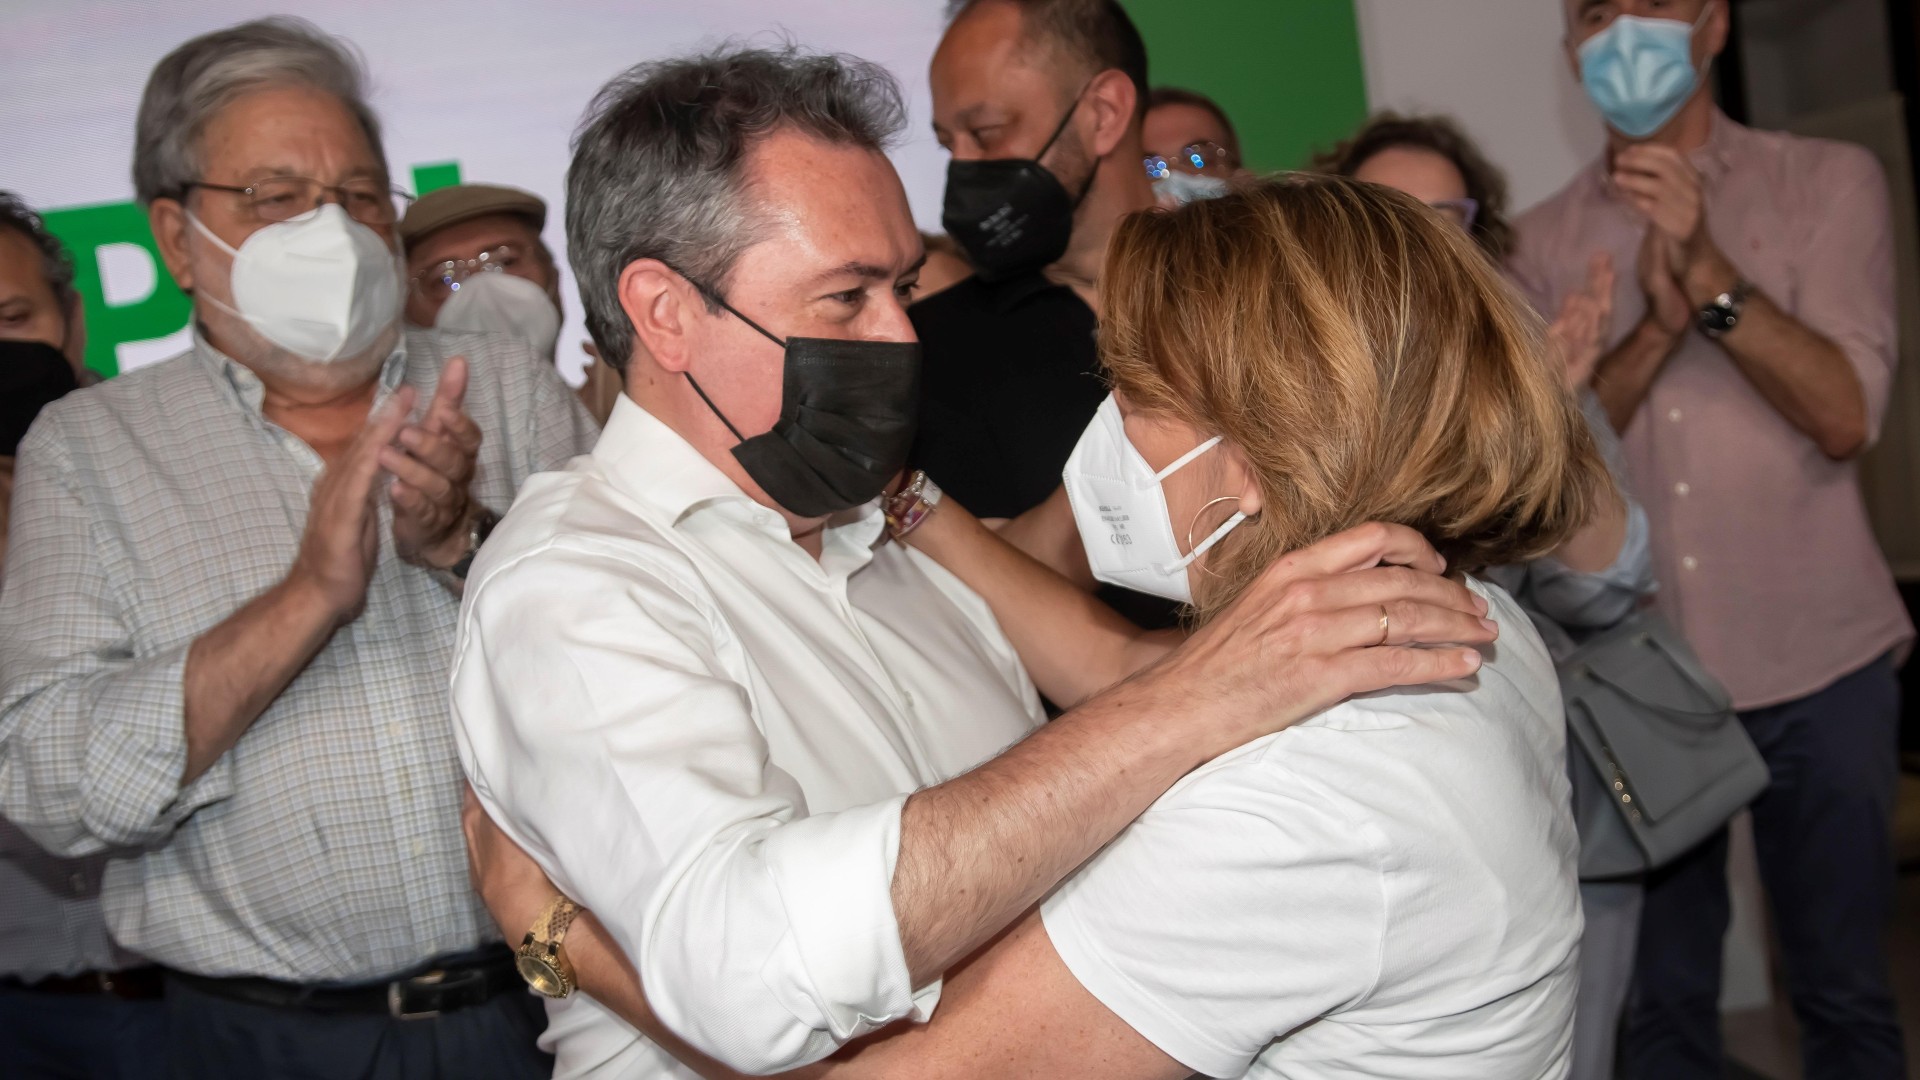 Ir al Video Juan Espadas gana las primarias del PSOE andaluz y Susana Díaz renuncia a la Secretaría General